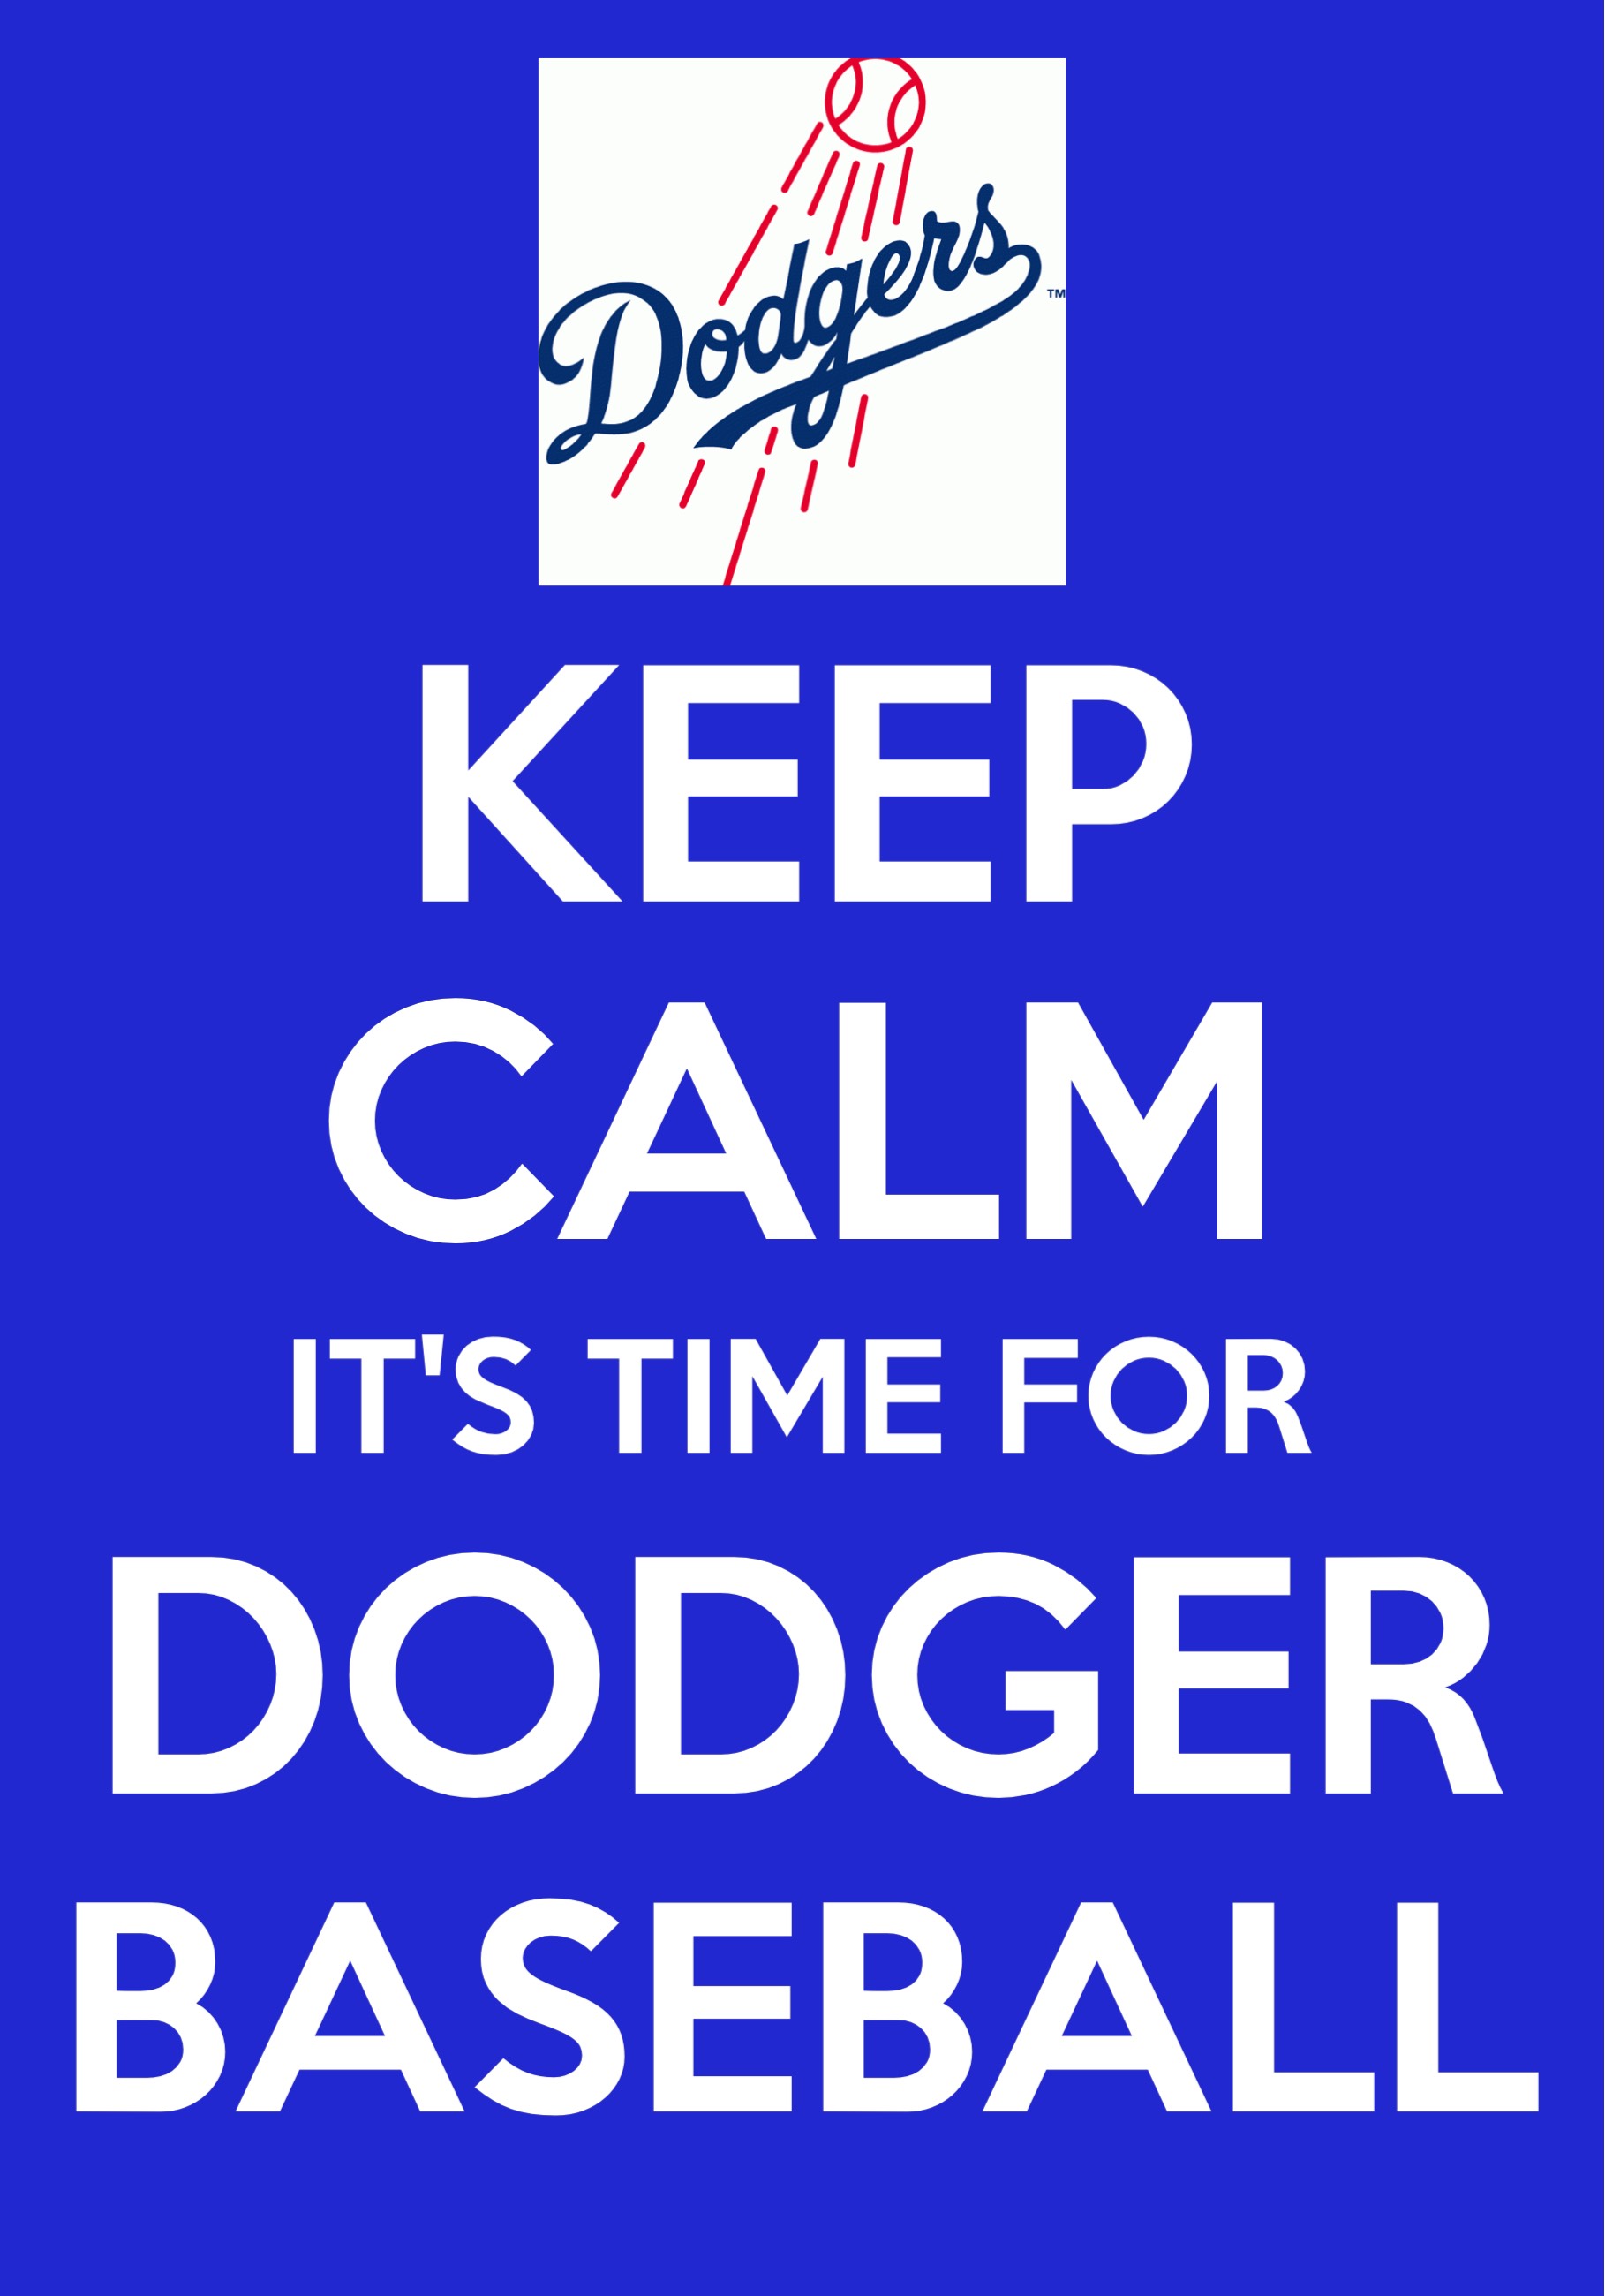 it's time for dodger baseball meme